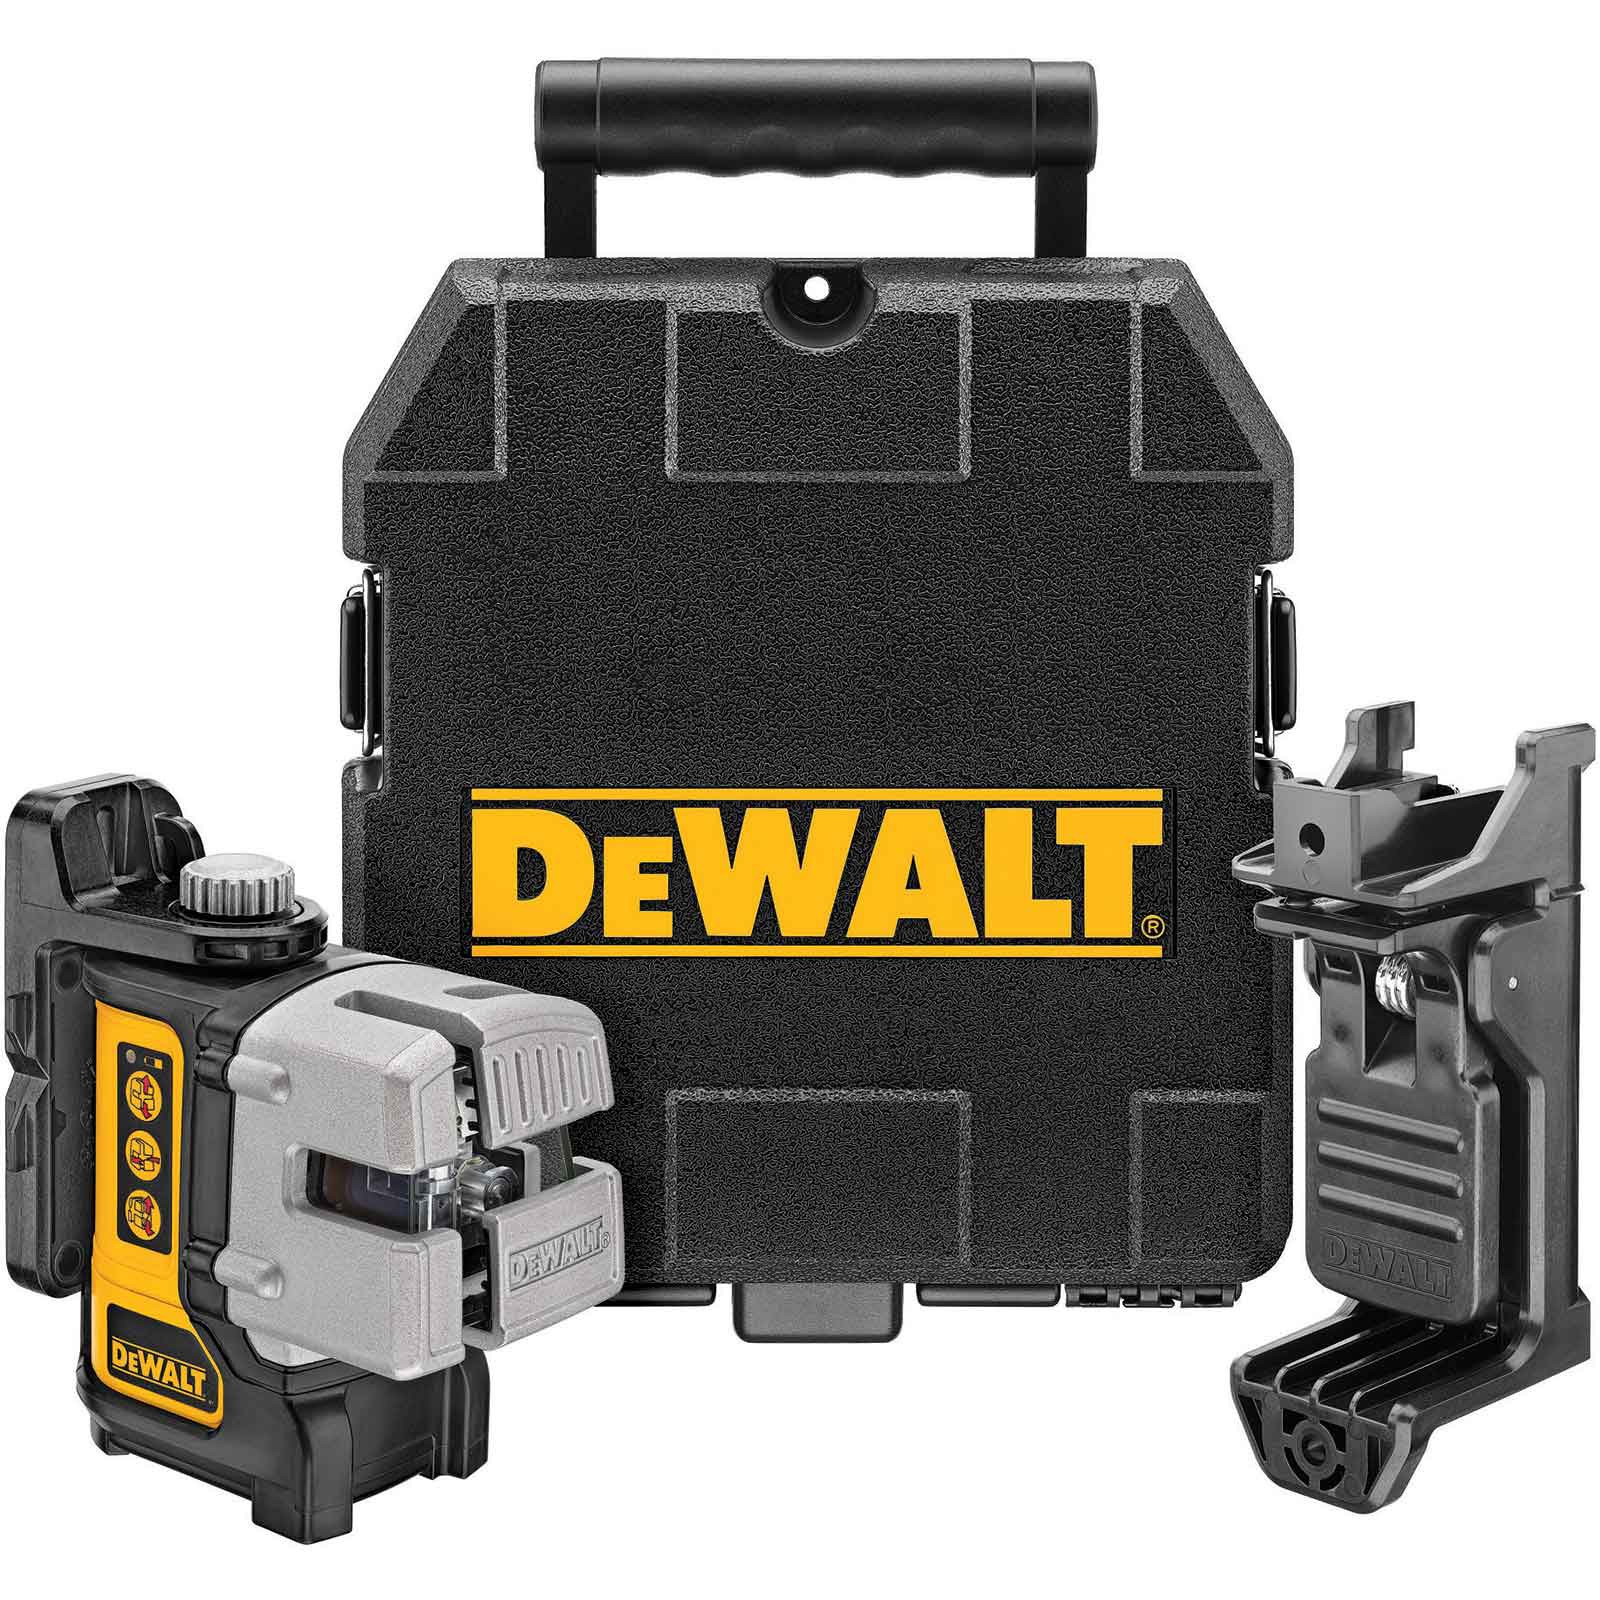 DeWALT DW089K-XJ Multi Linien-Laser selbstnivellierend Kreuzlinien + Zubehör von Dewalt